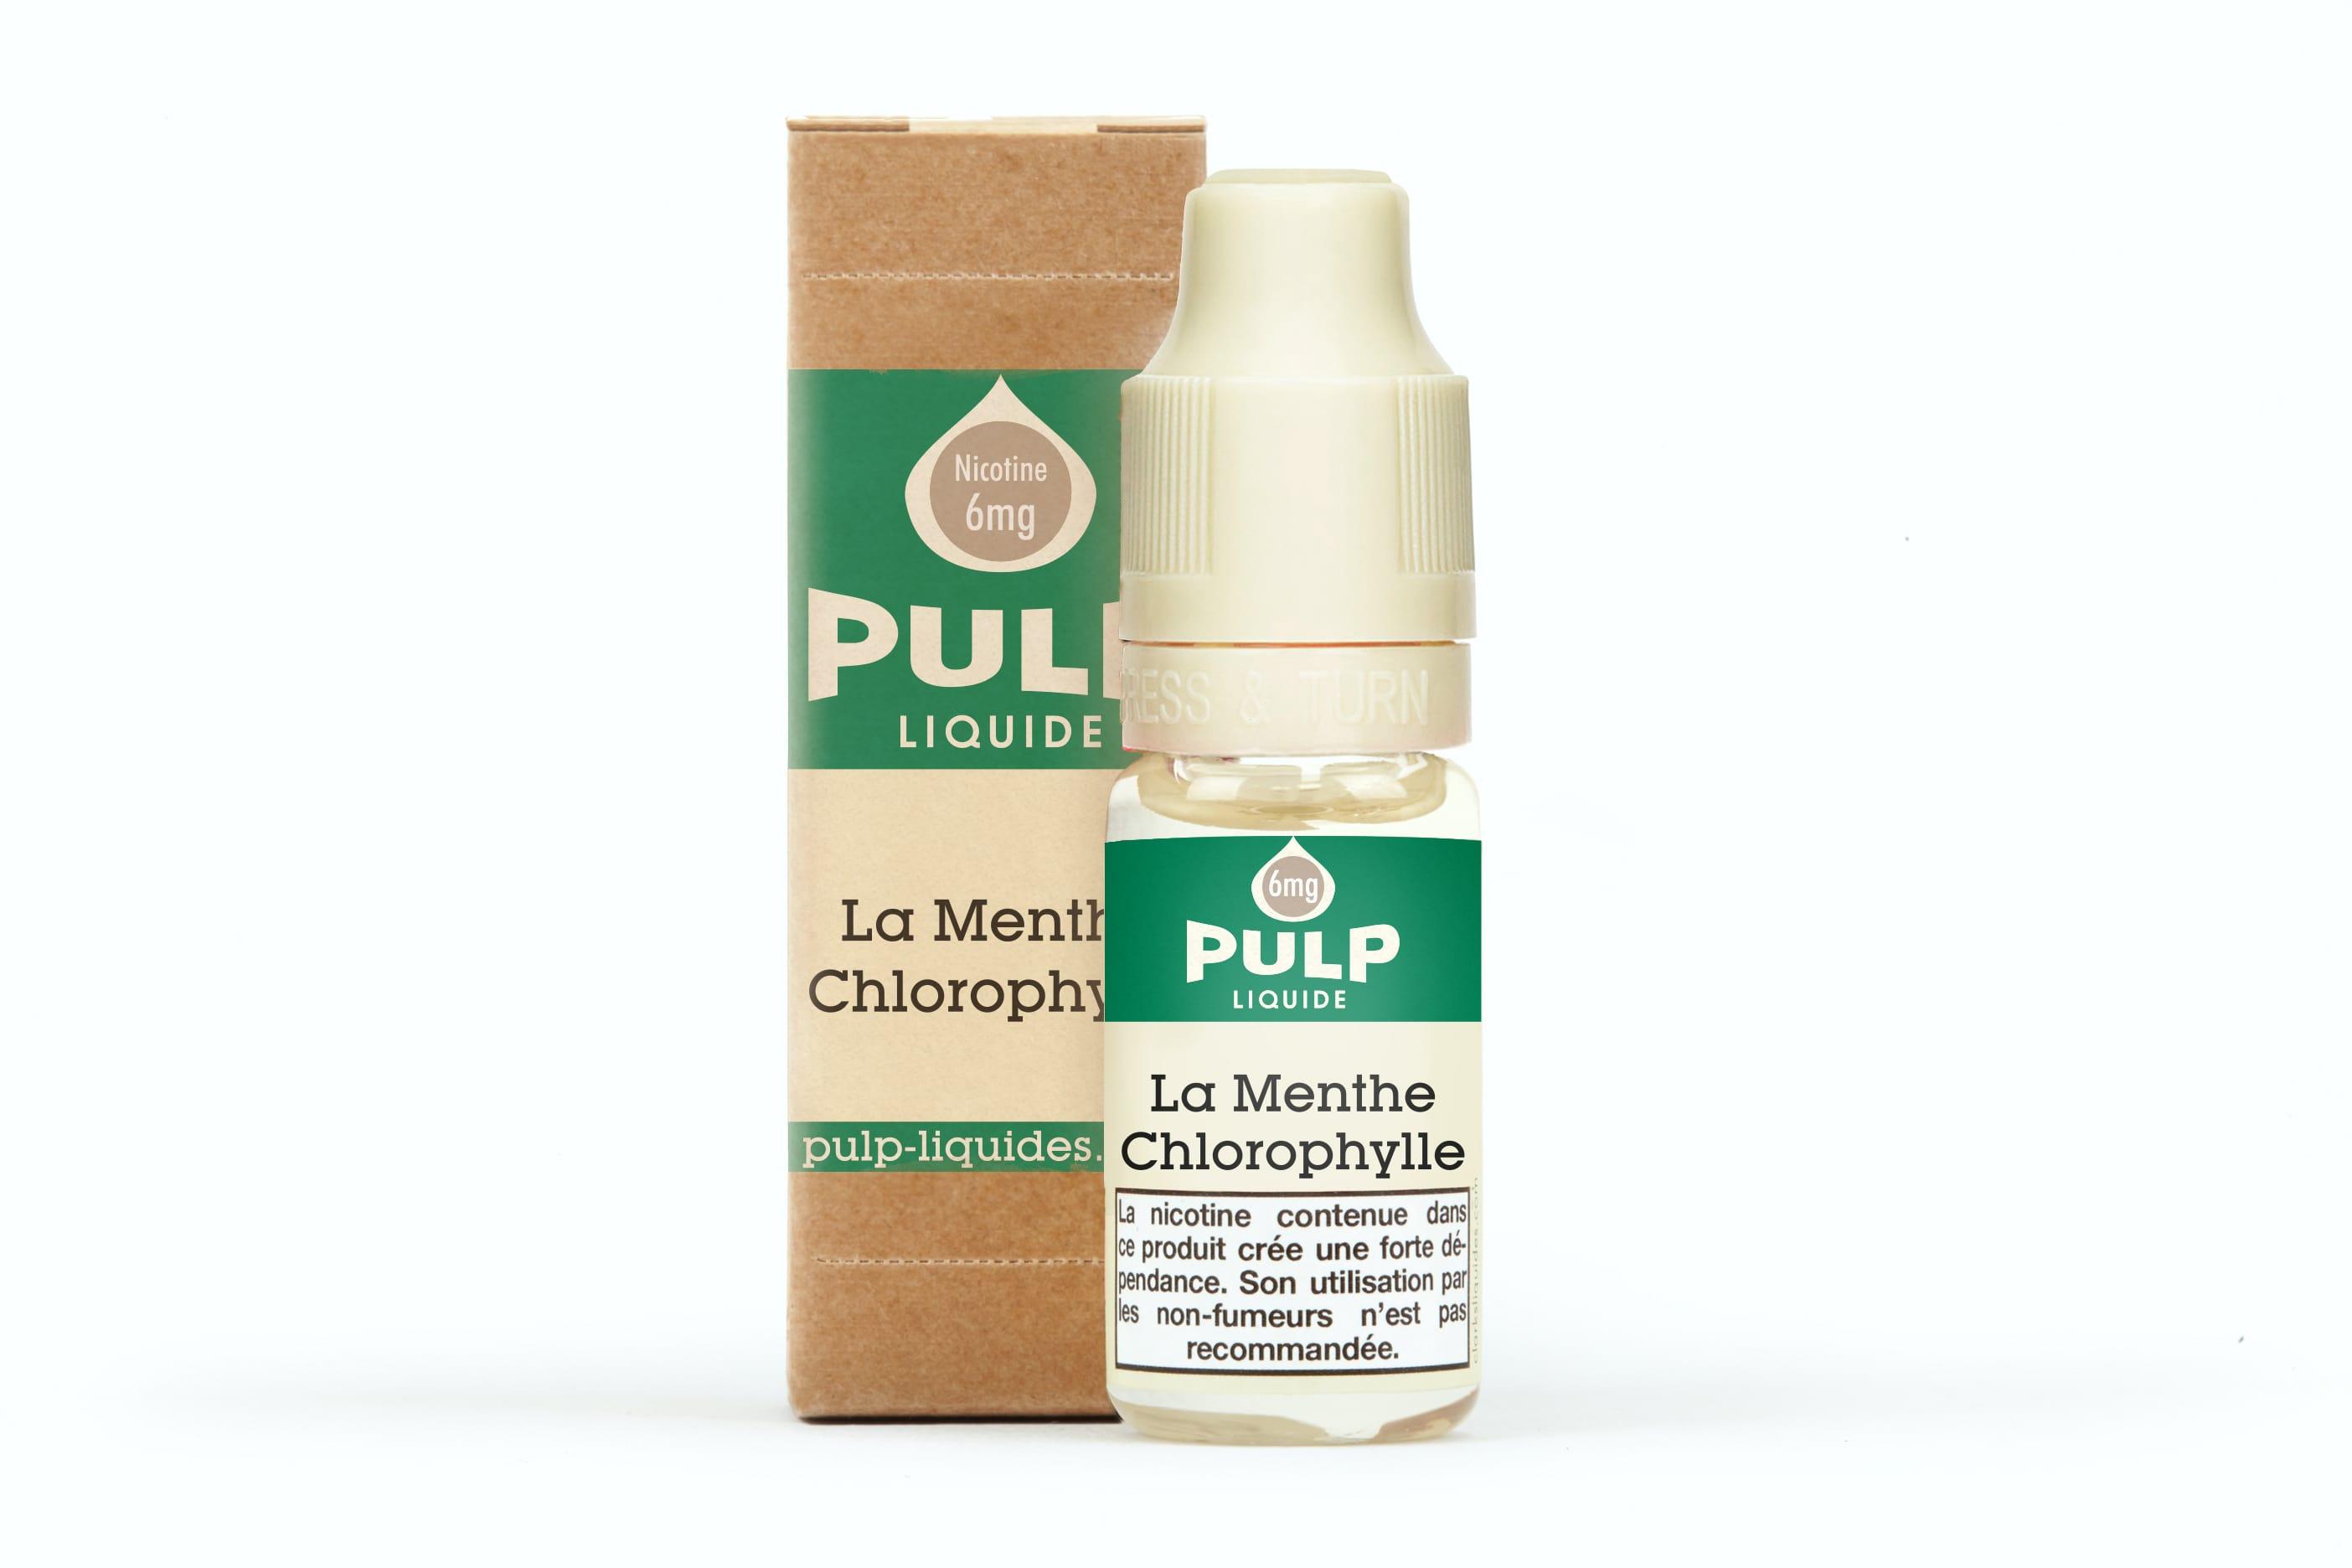 La Menthe Chlorophylle Pulp